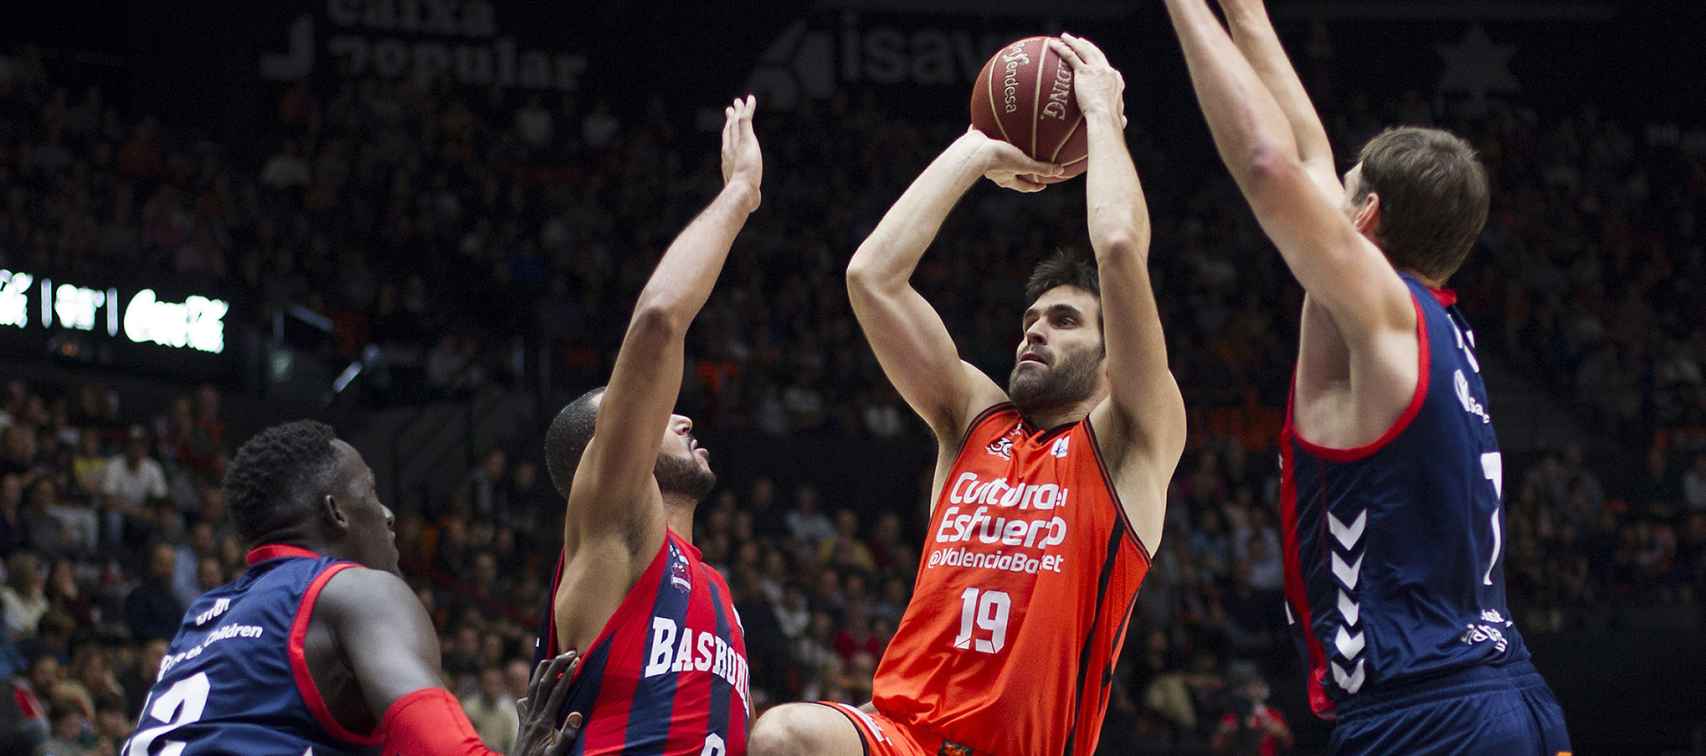 San Emeterio intenta lanzar en un Baskonia - Valencia Basket de este curso.